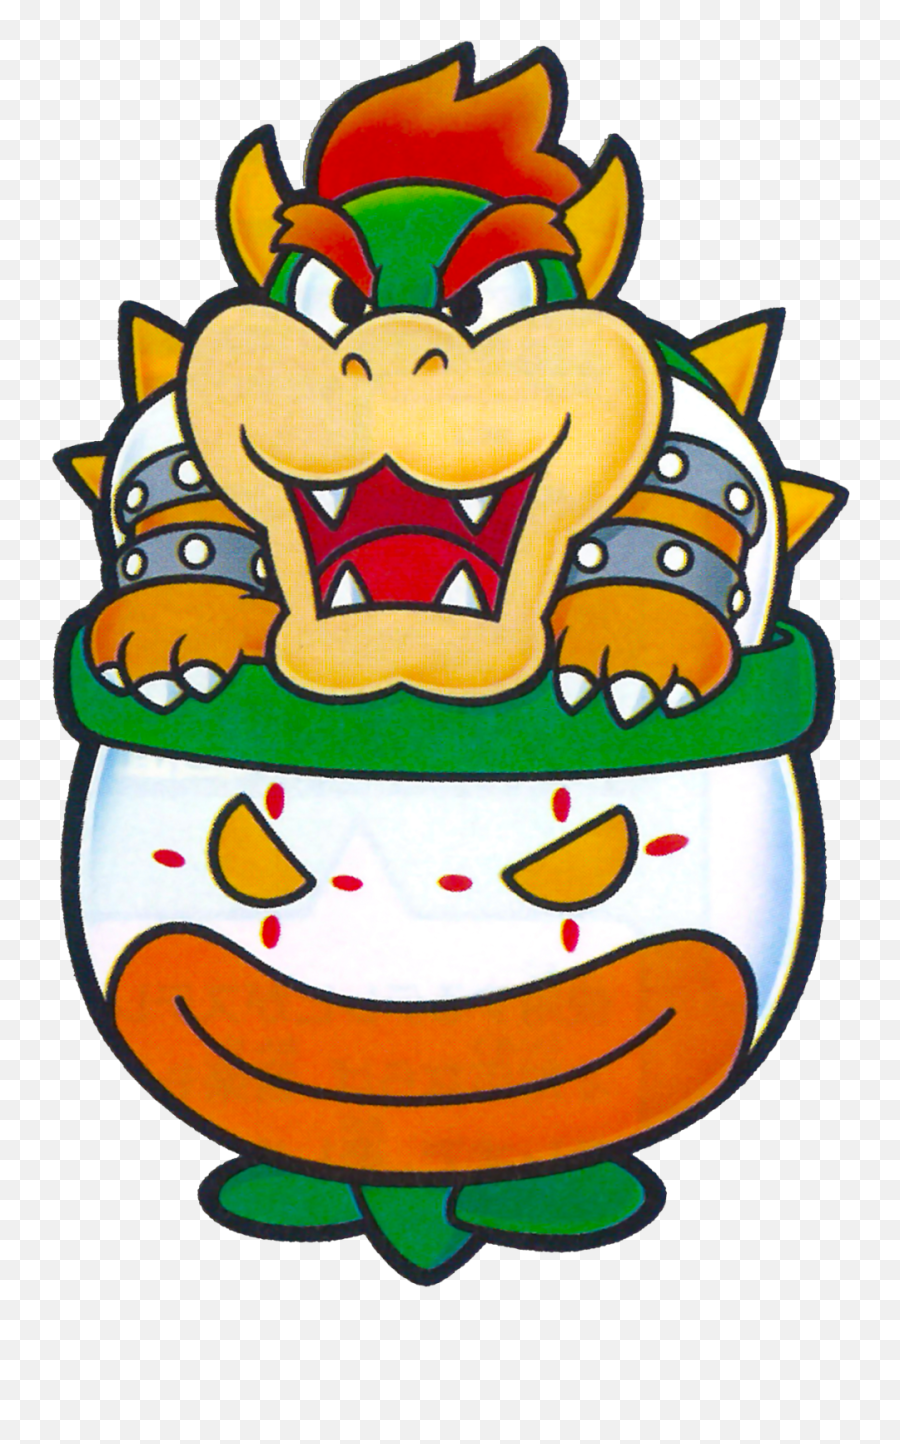 Super Mario Boards - Bowser In Clown Car Emoji,Mario Emotion Face